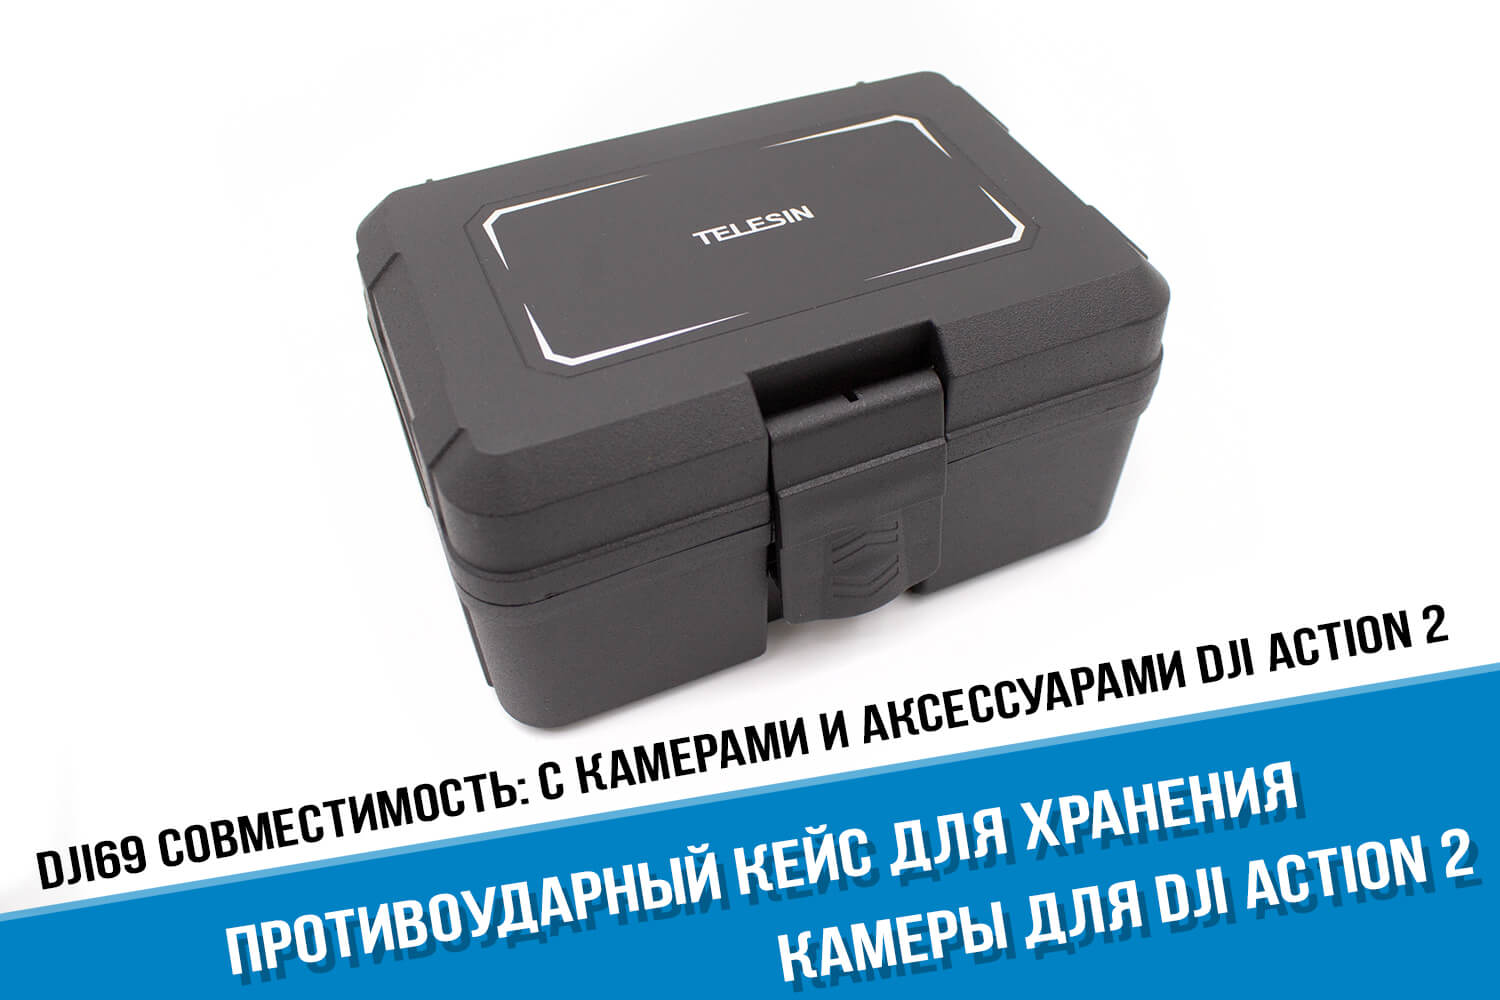 Противоударный кейс для экшн-камеры DJI Action 2 фирмы Telesin